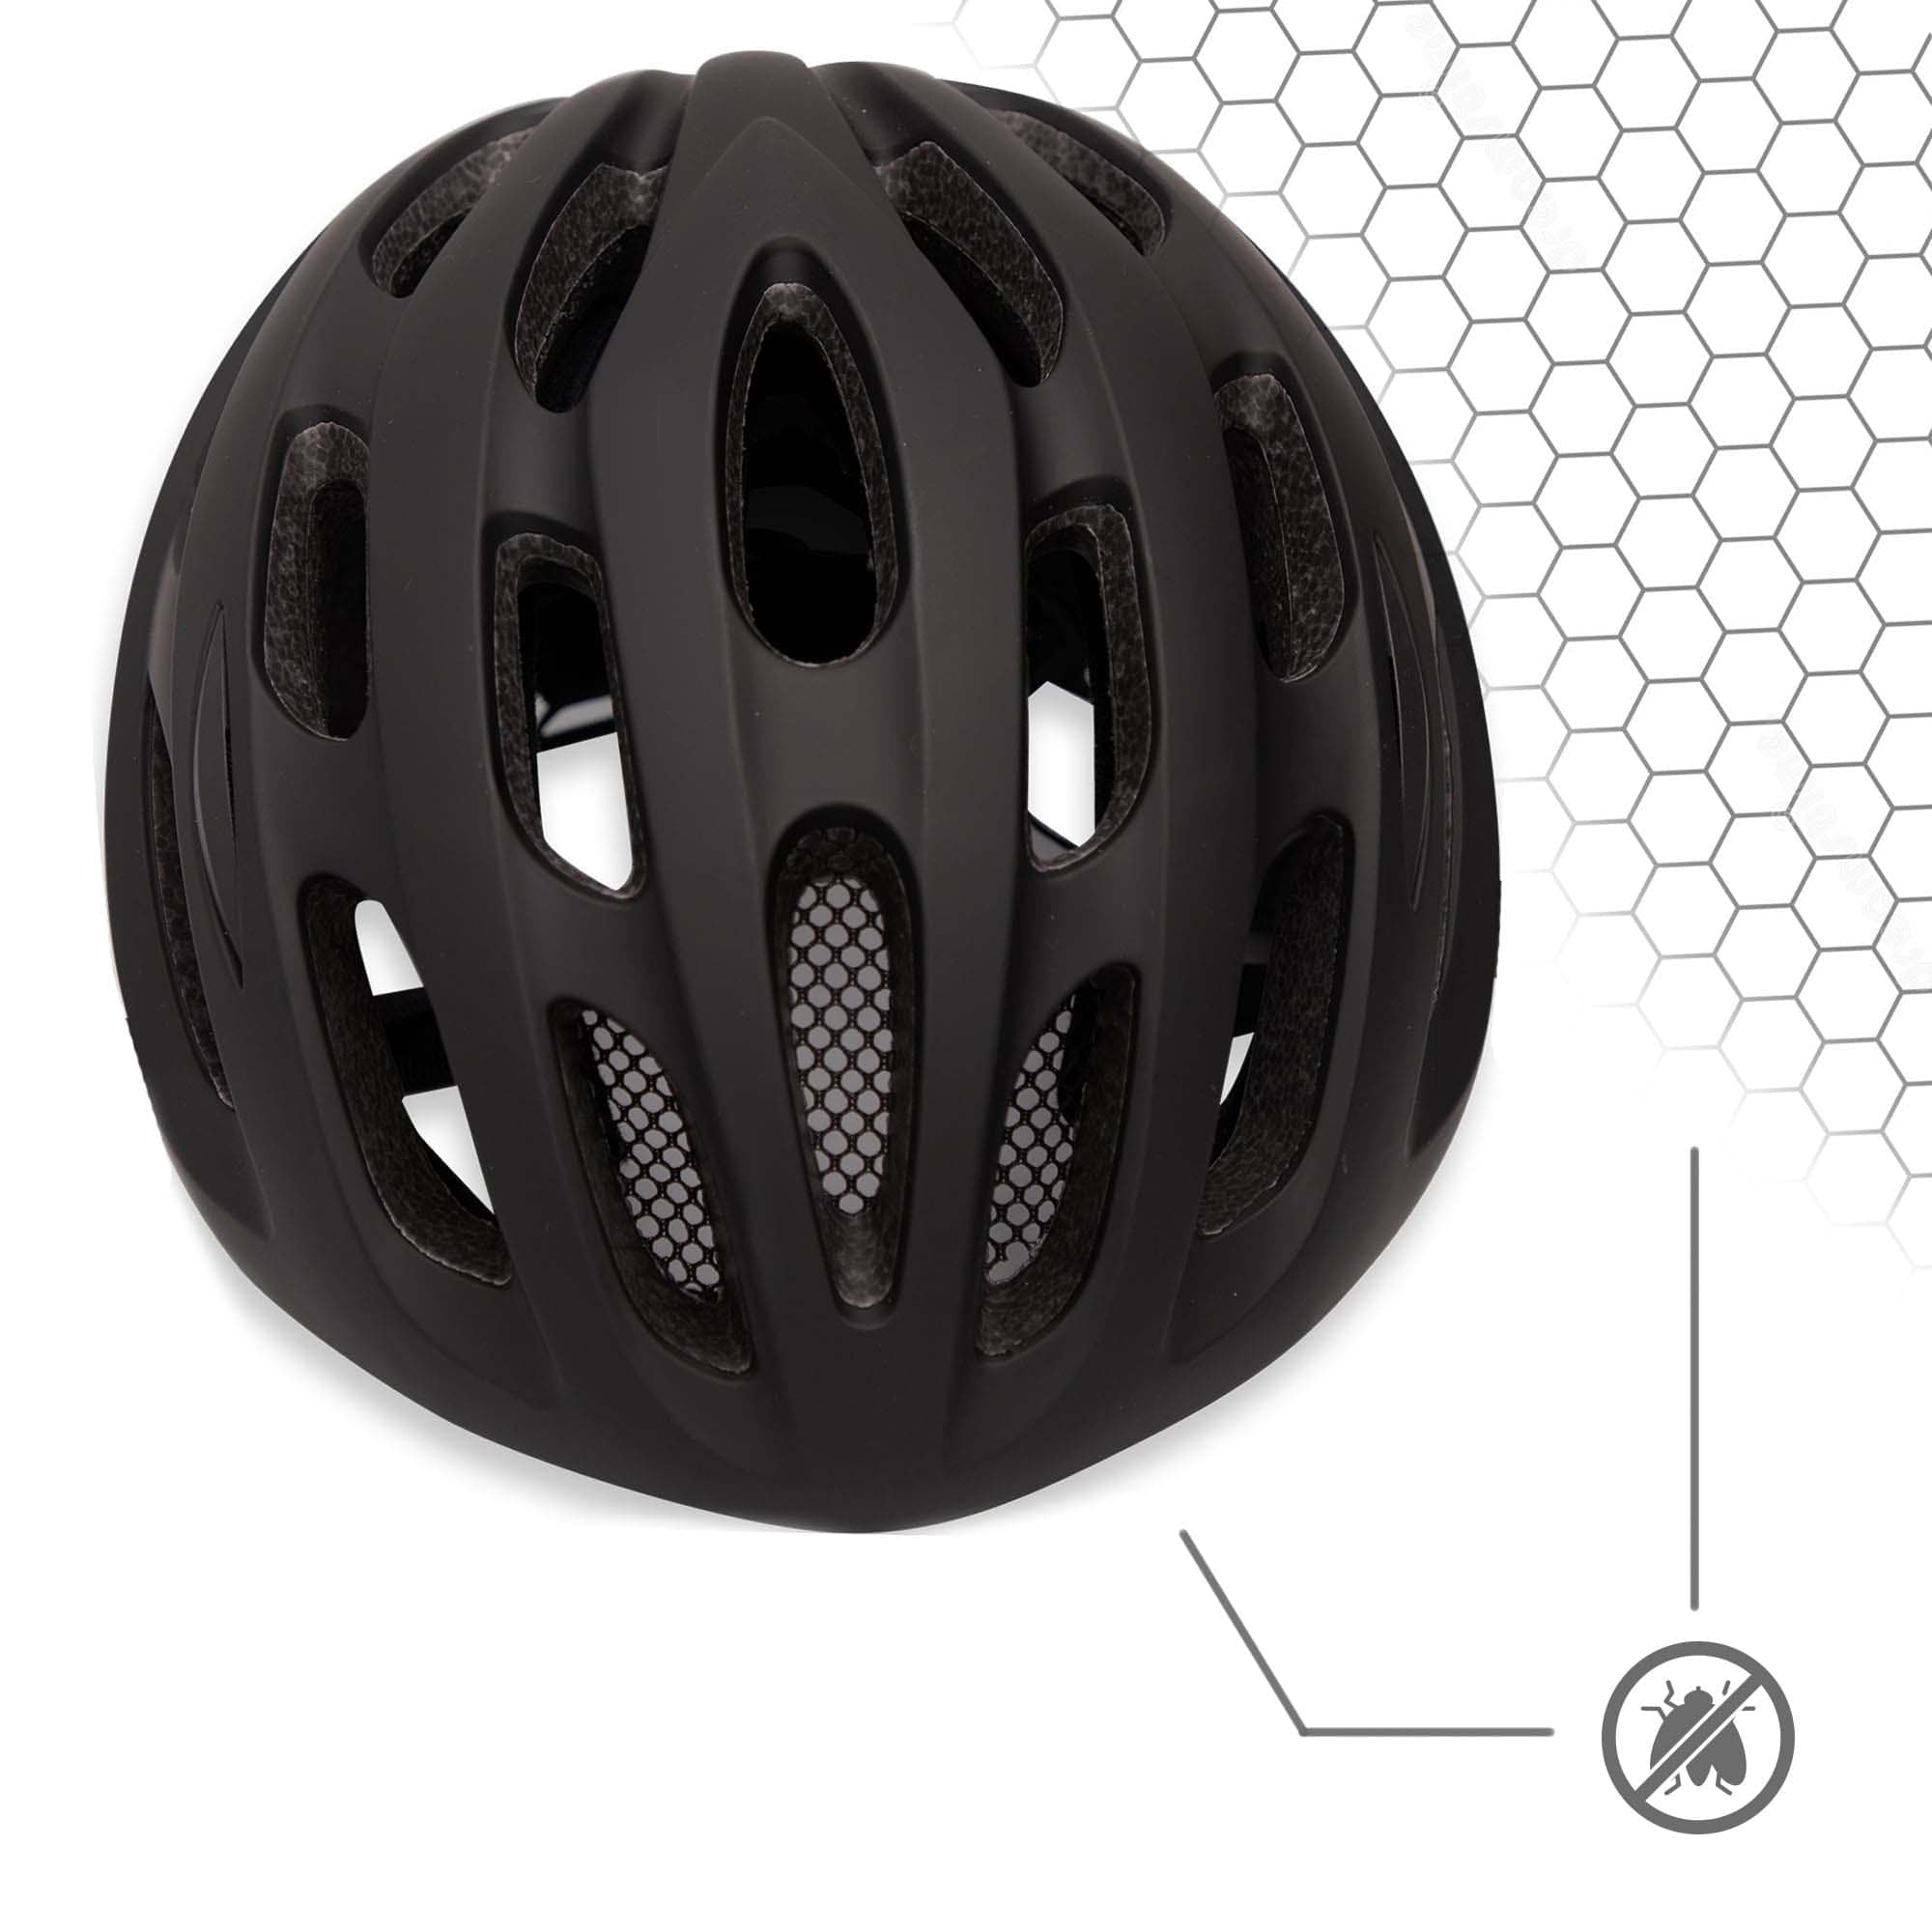 Bicycle Racer Helmet - Matt black